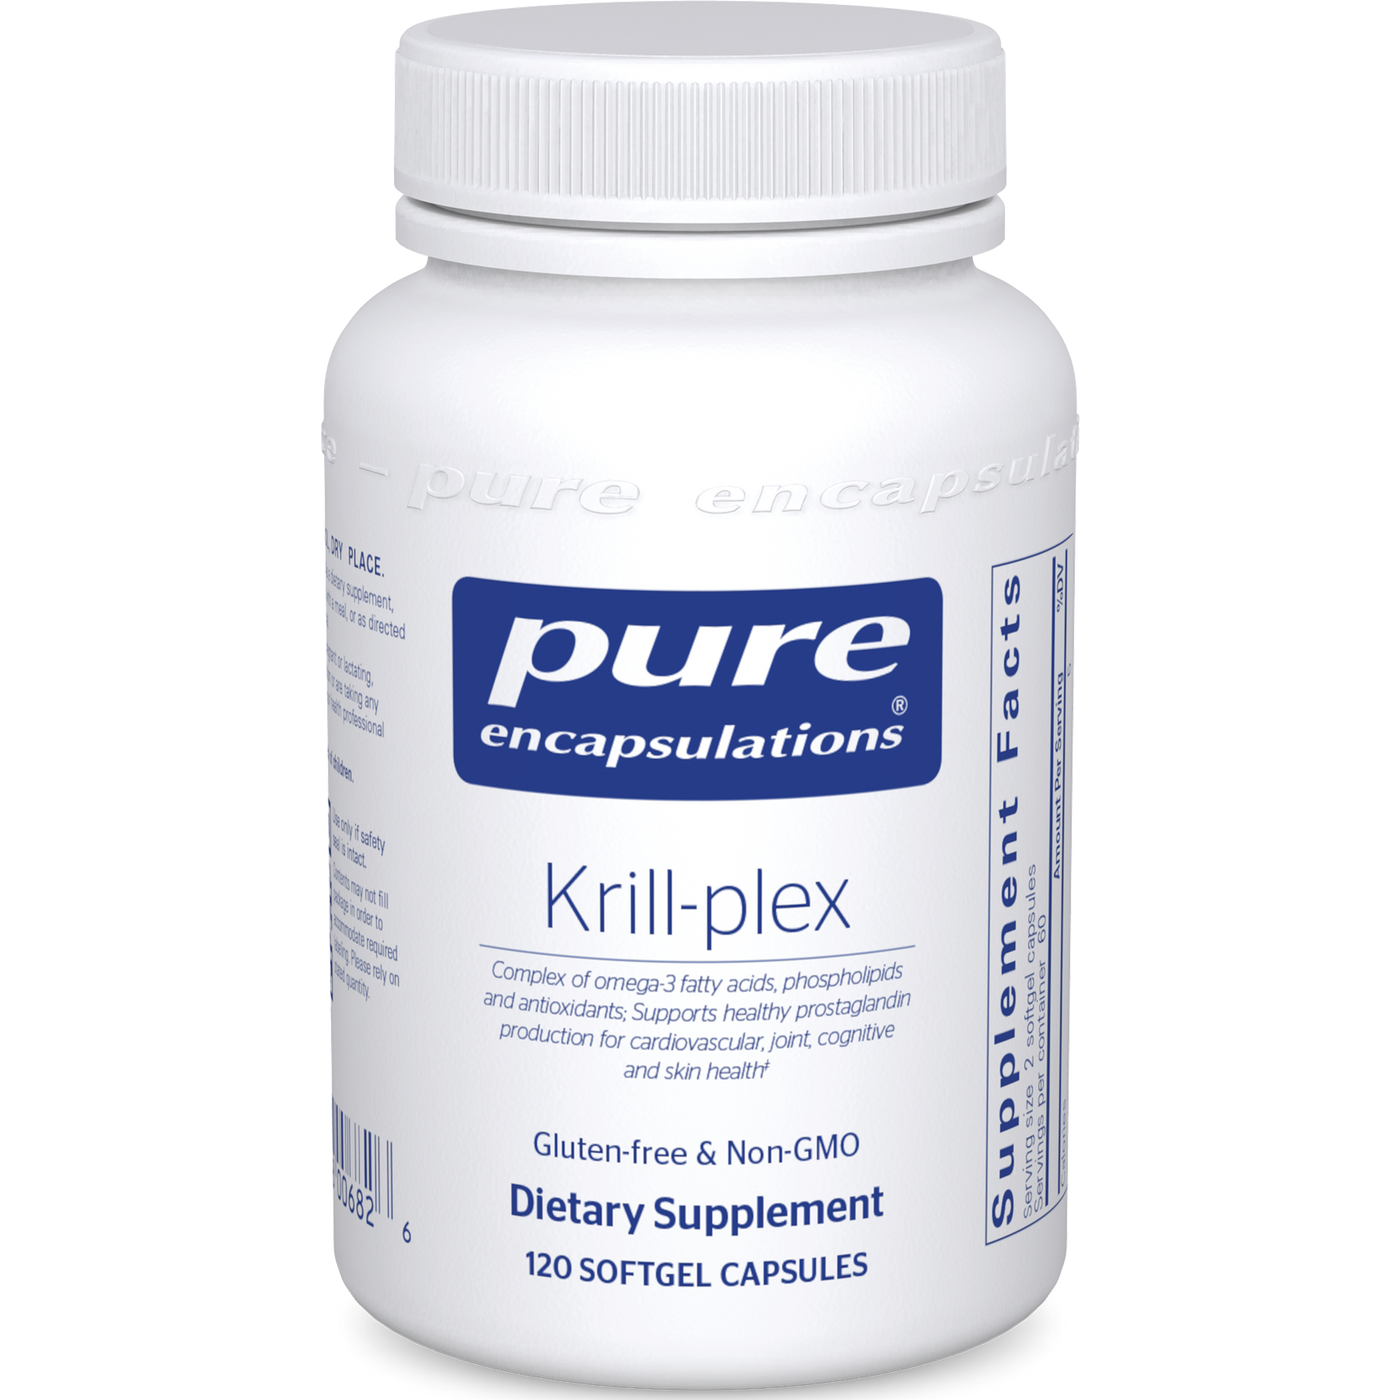 Krill-plex 500 mg 120 gels Curated Wellness